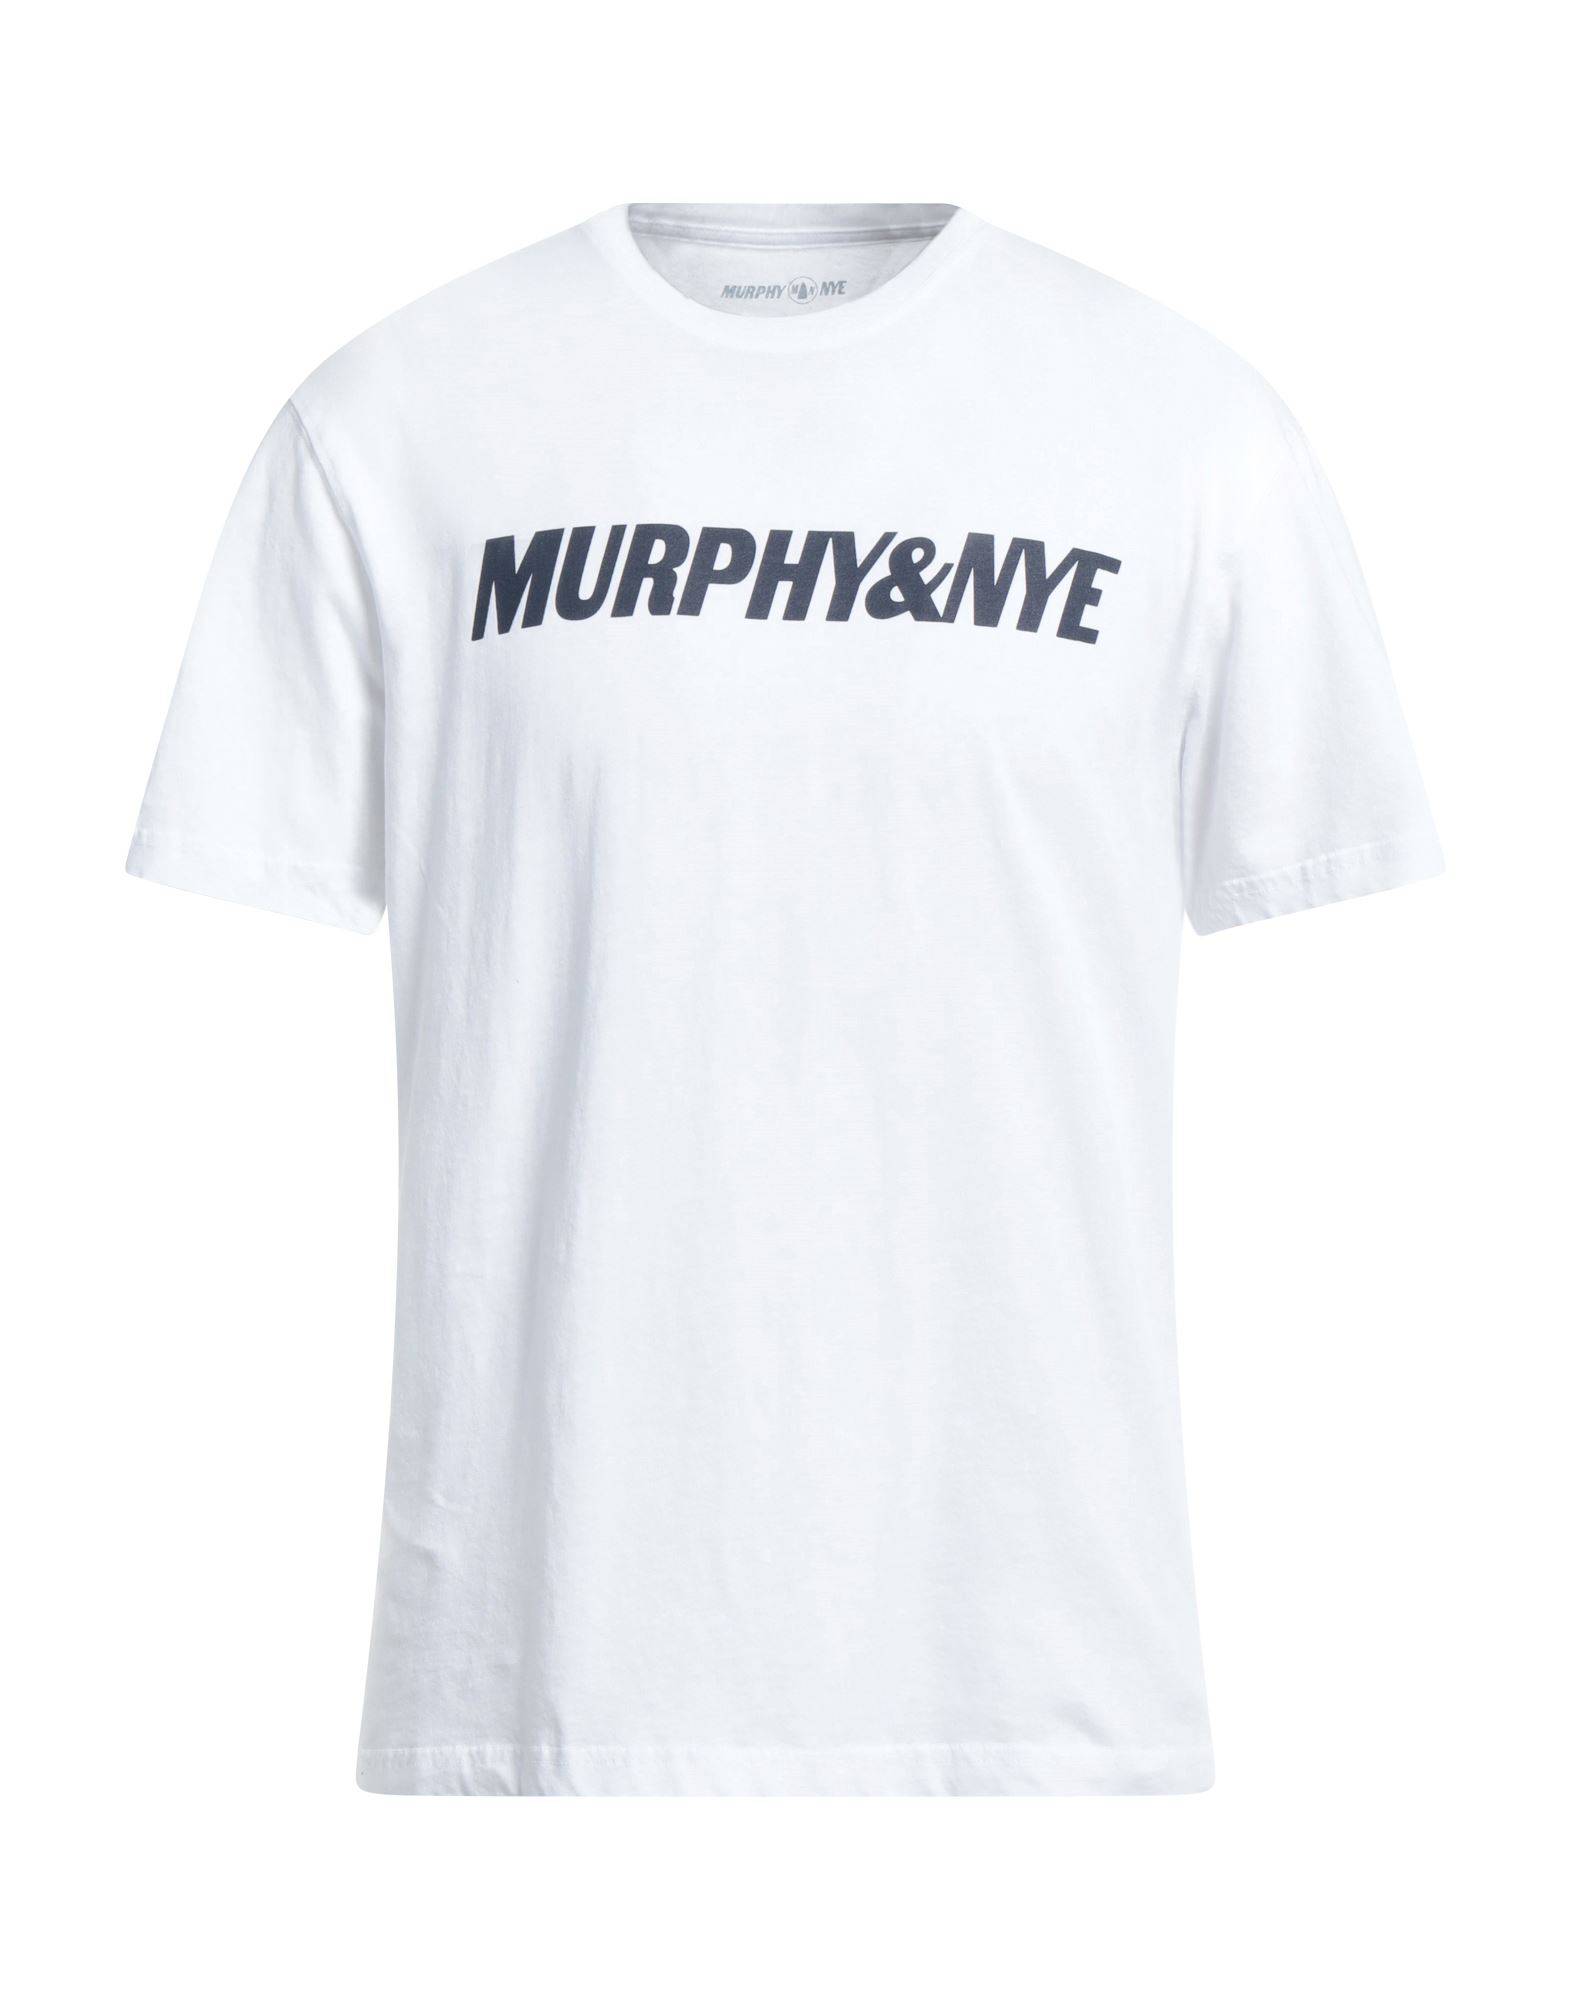 MURPHY & NYE T-shirts Herren Weiß von MURPHY & NYE